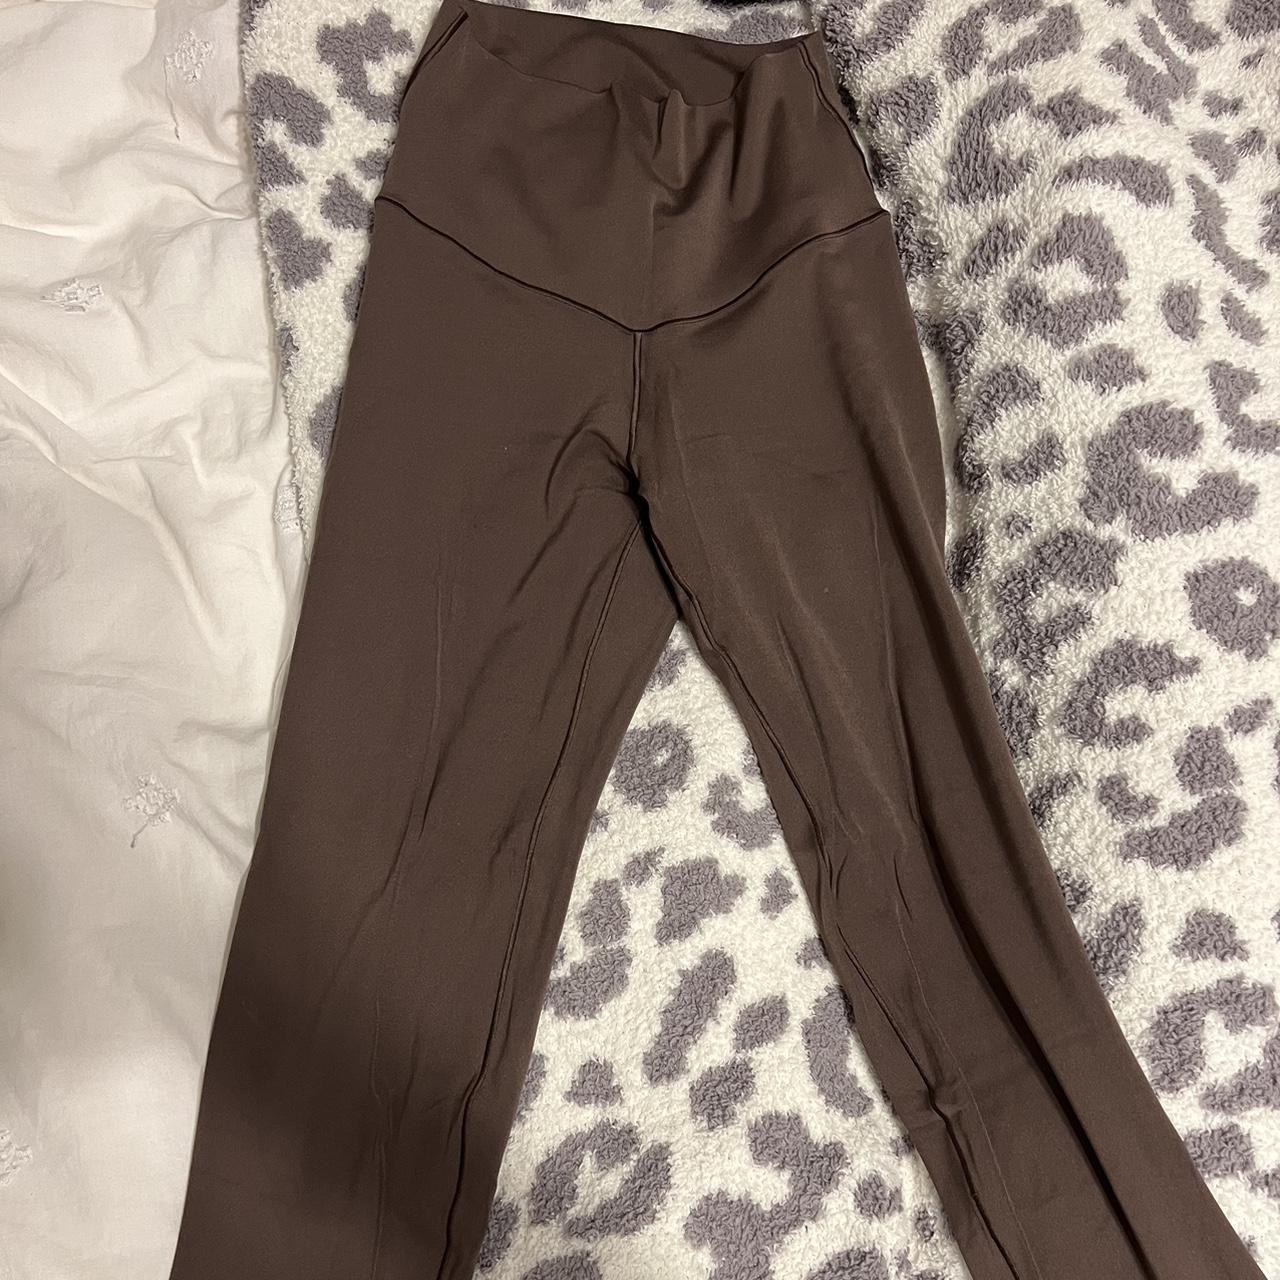 Aerie chocolate brown Offline leggings - Depop